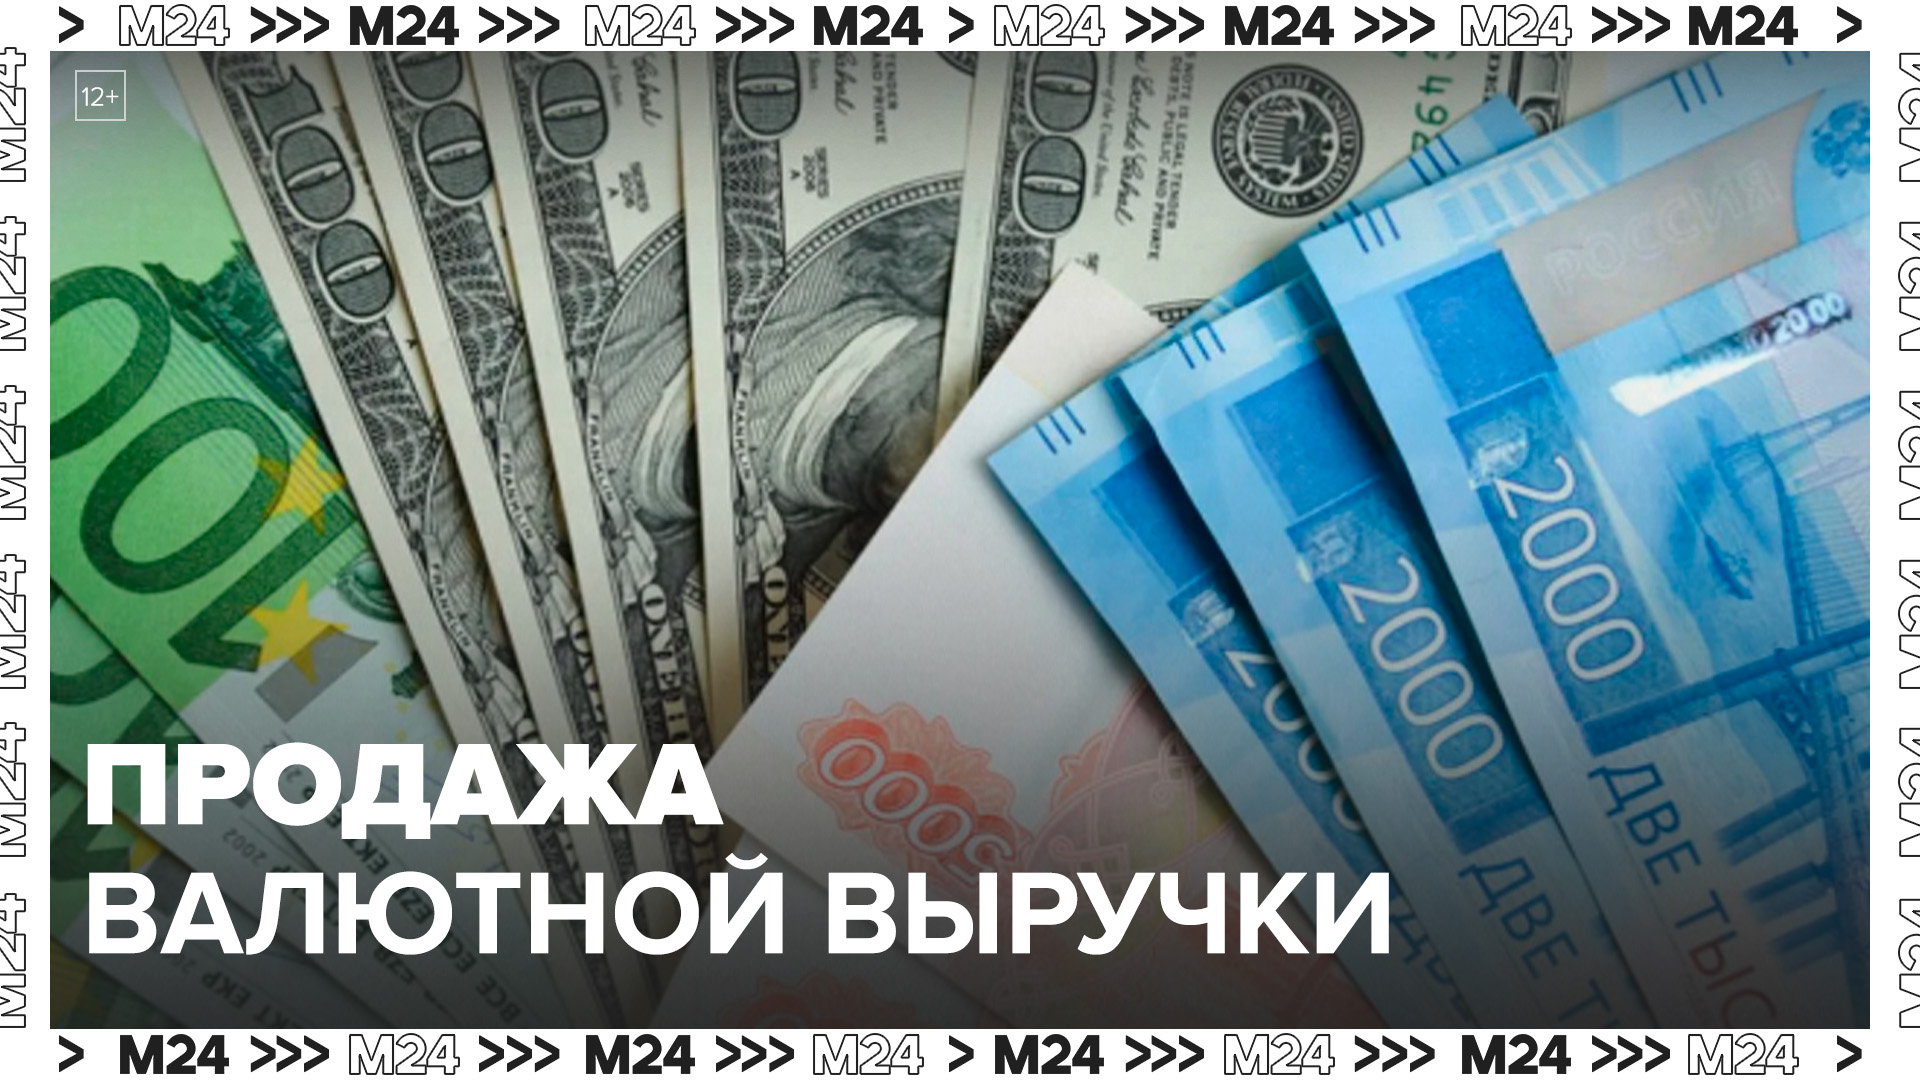 Продажа валютной выручки апрель. Валютная выручка. Возврат валютной выручки. Репатриация валютной выручки 2024. Euro ruble Rulo.